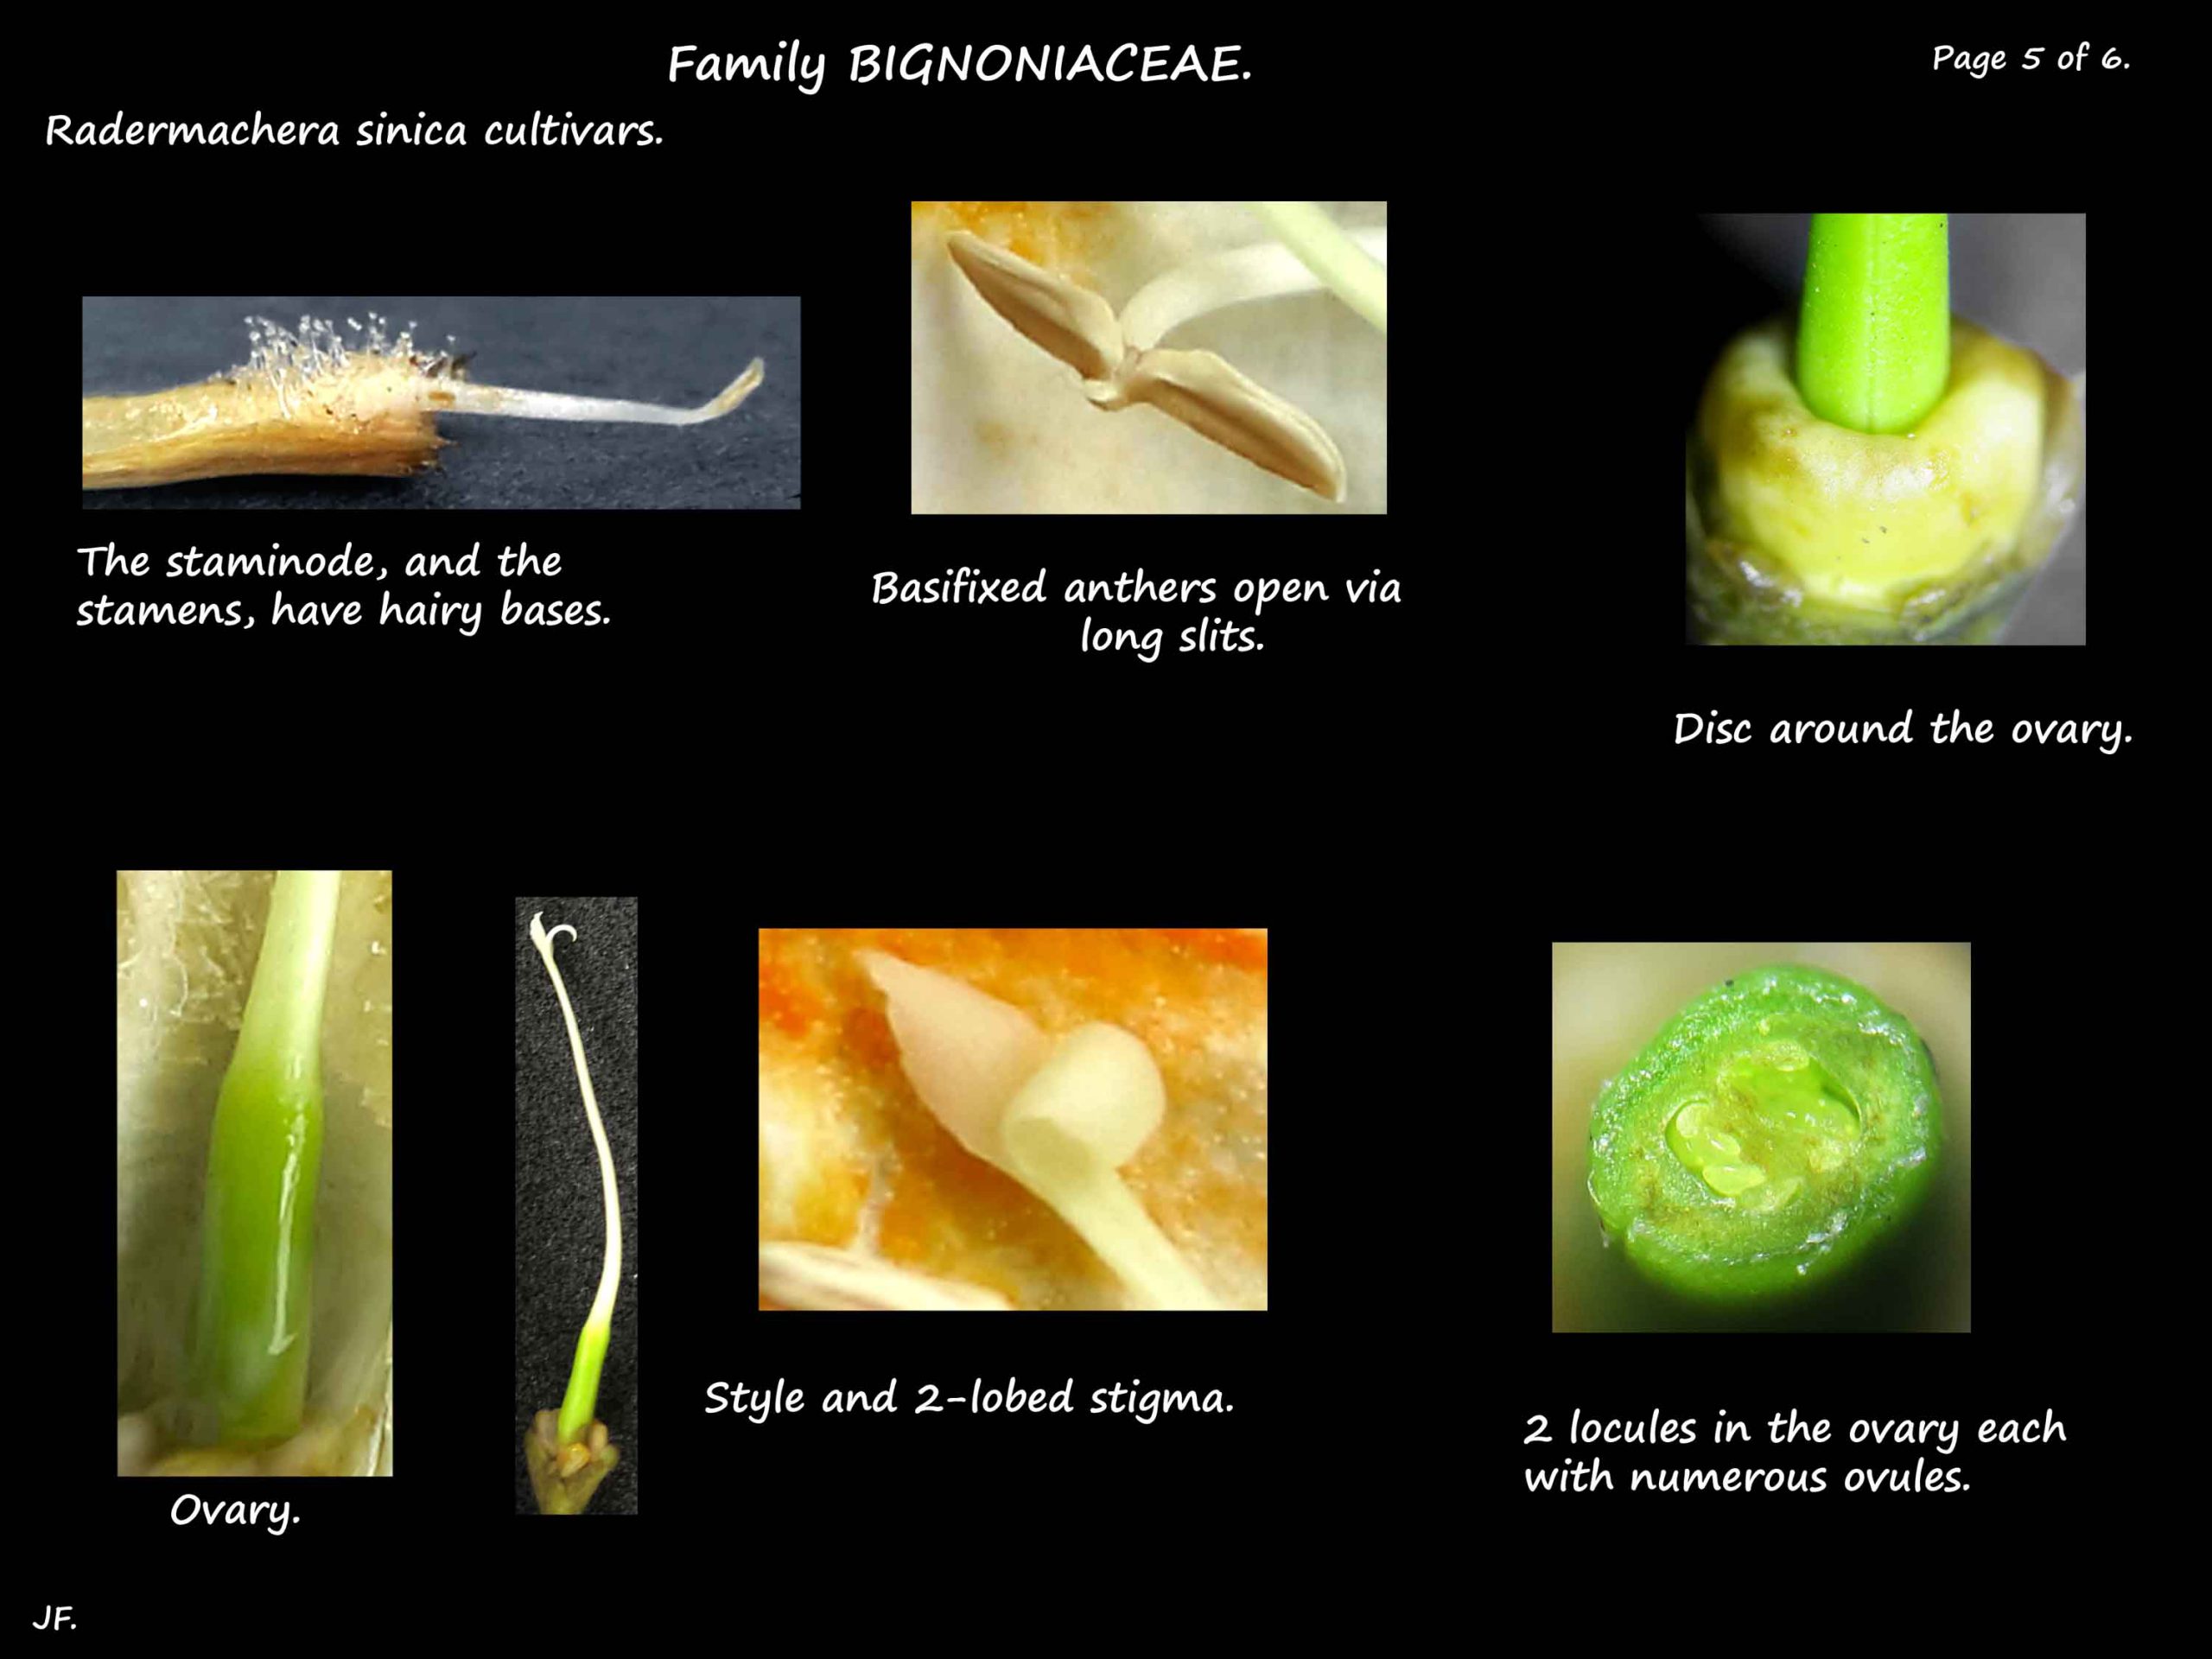 5 Radermachera cultivar anther & ovary